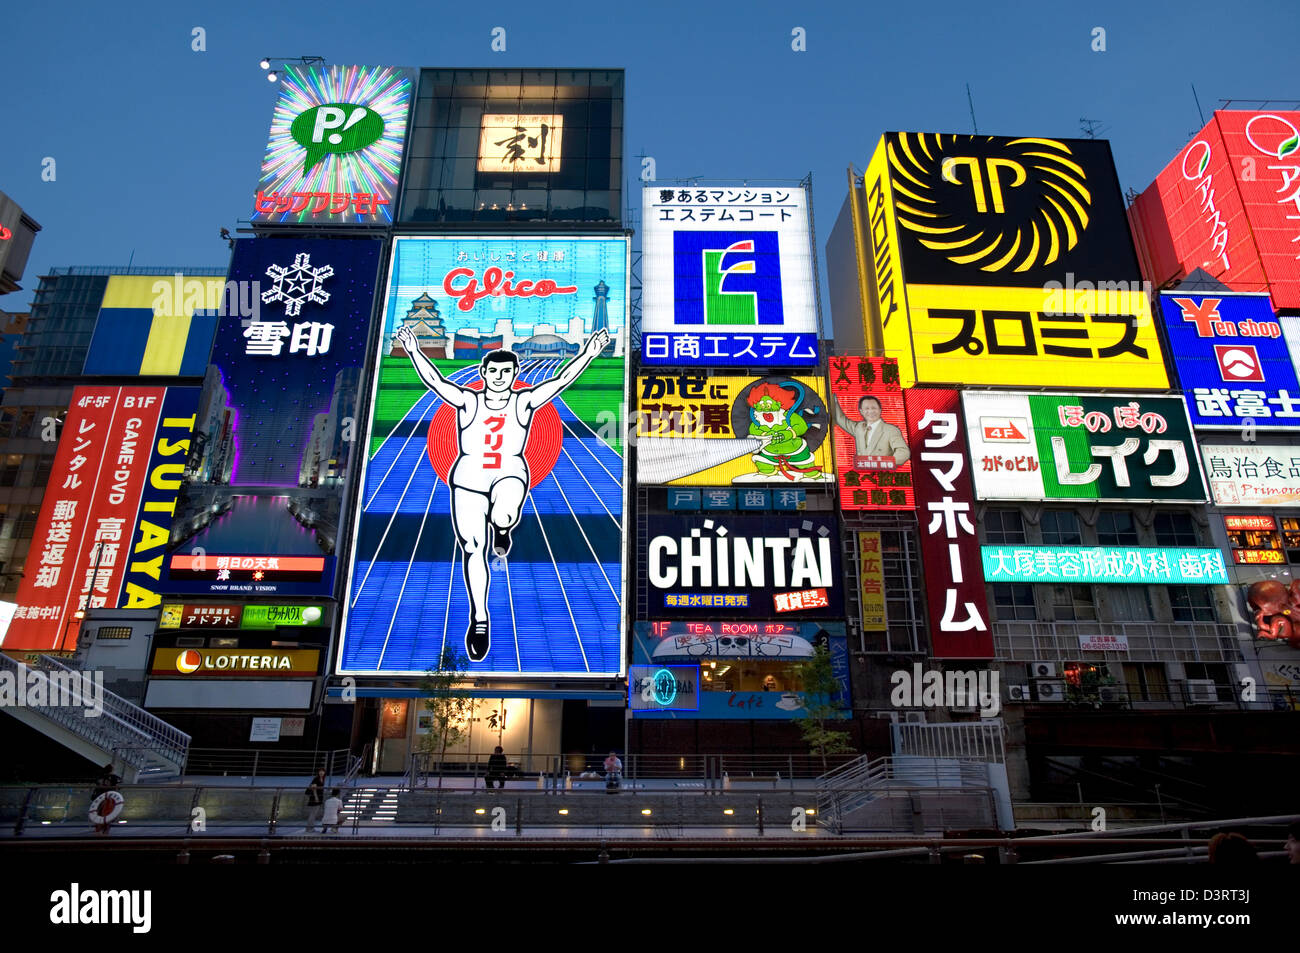 Carteles de publicidad del llamado "muro de neón' en el distrito de entretenimientos de Dotonbori Namba, Osaka agregar al animado ambiente nocturno Foto de stock